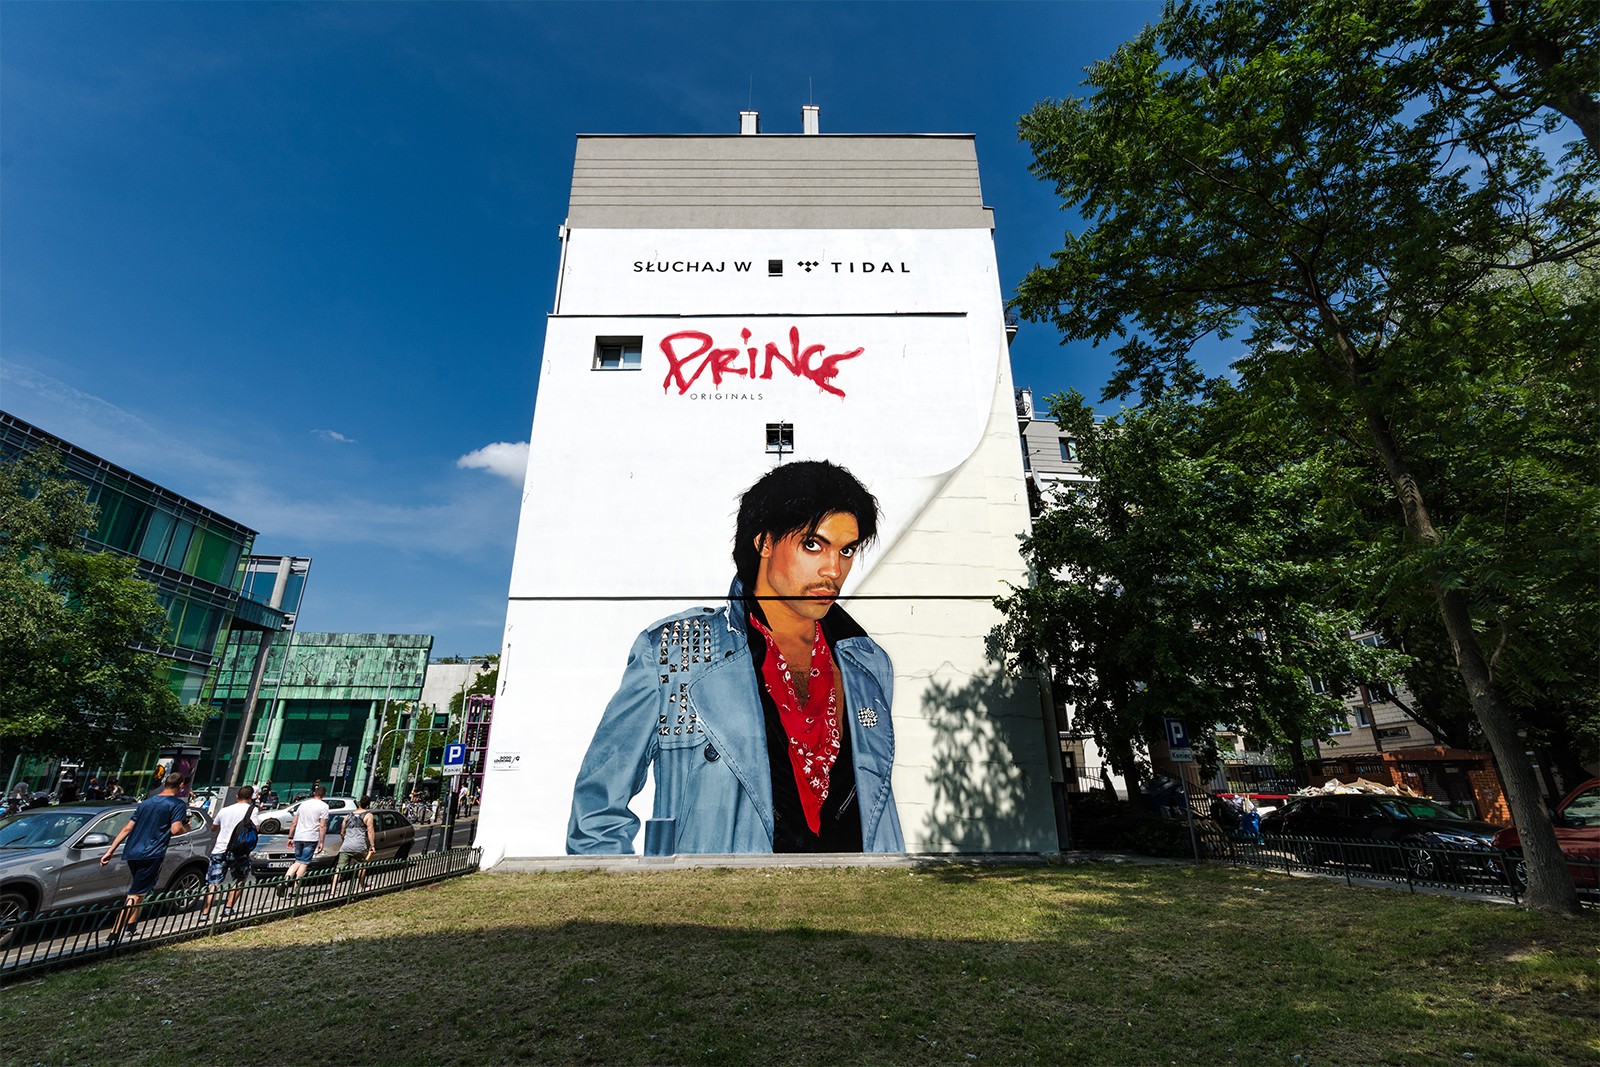 Mural reklamowy Prince dla klienta Tidal w Warszawie | Tidal x Prince | Portfolio